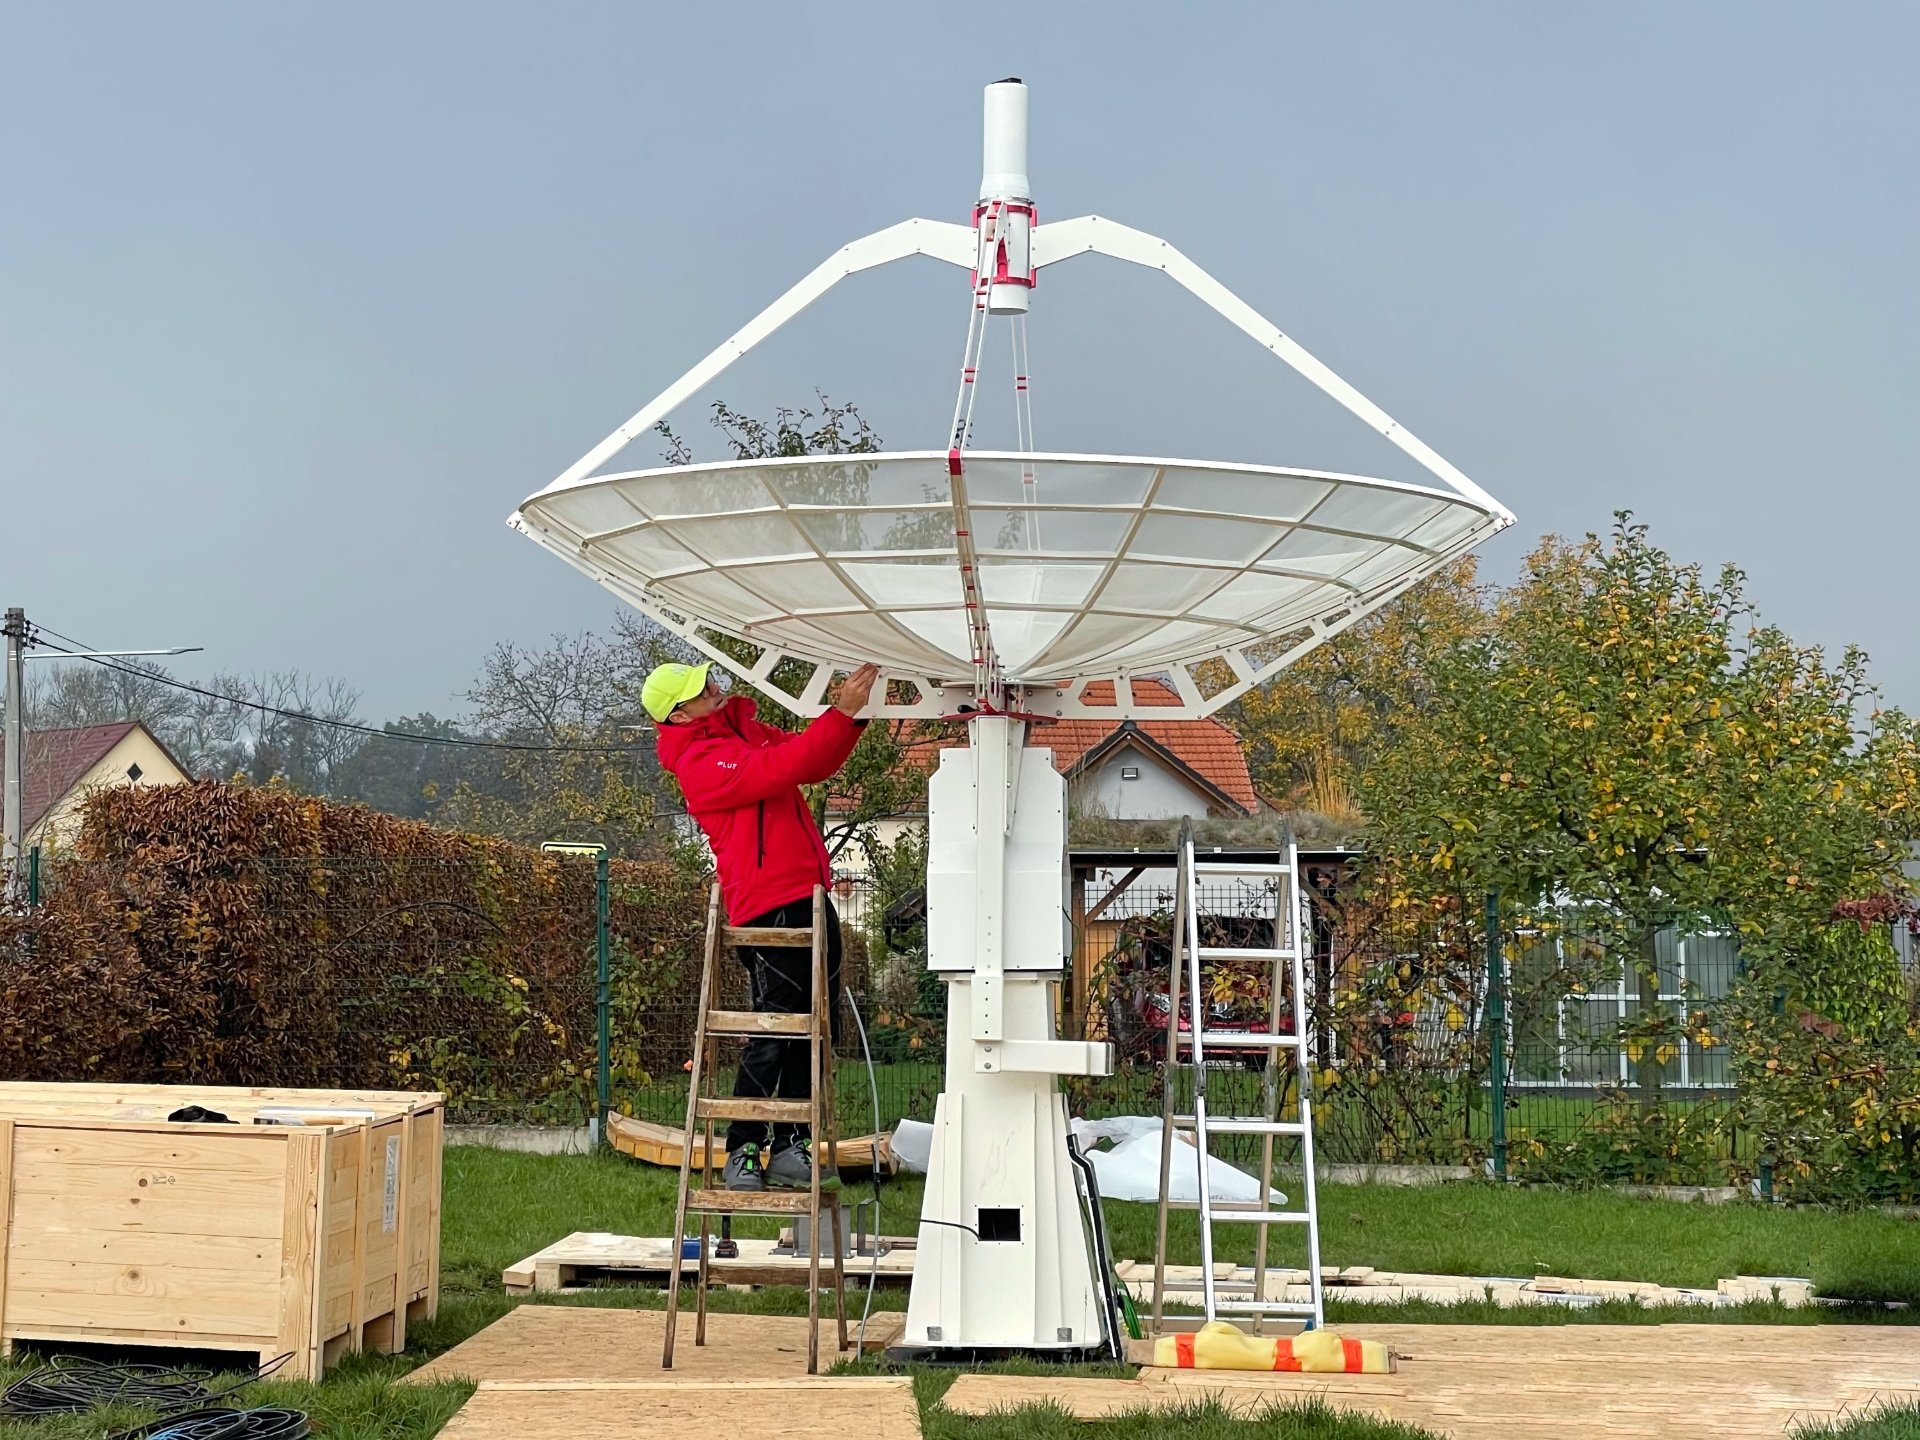 Radiotelescopio SPIDER 300A per radioastronomia installato presso Praga in Repubblica Ceca